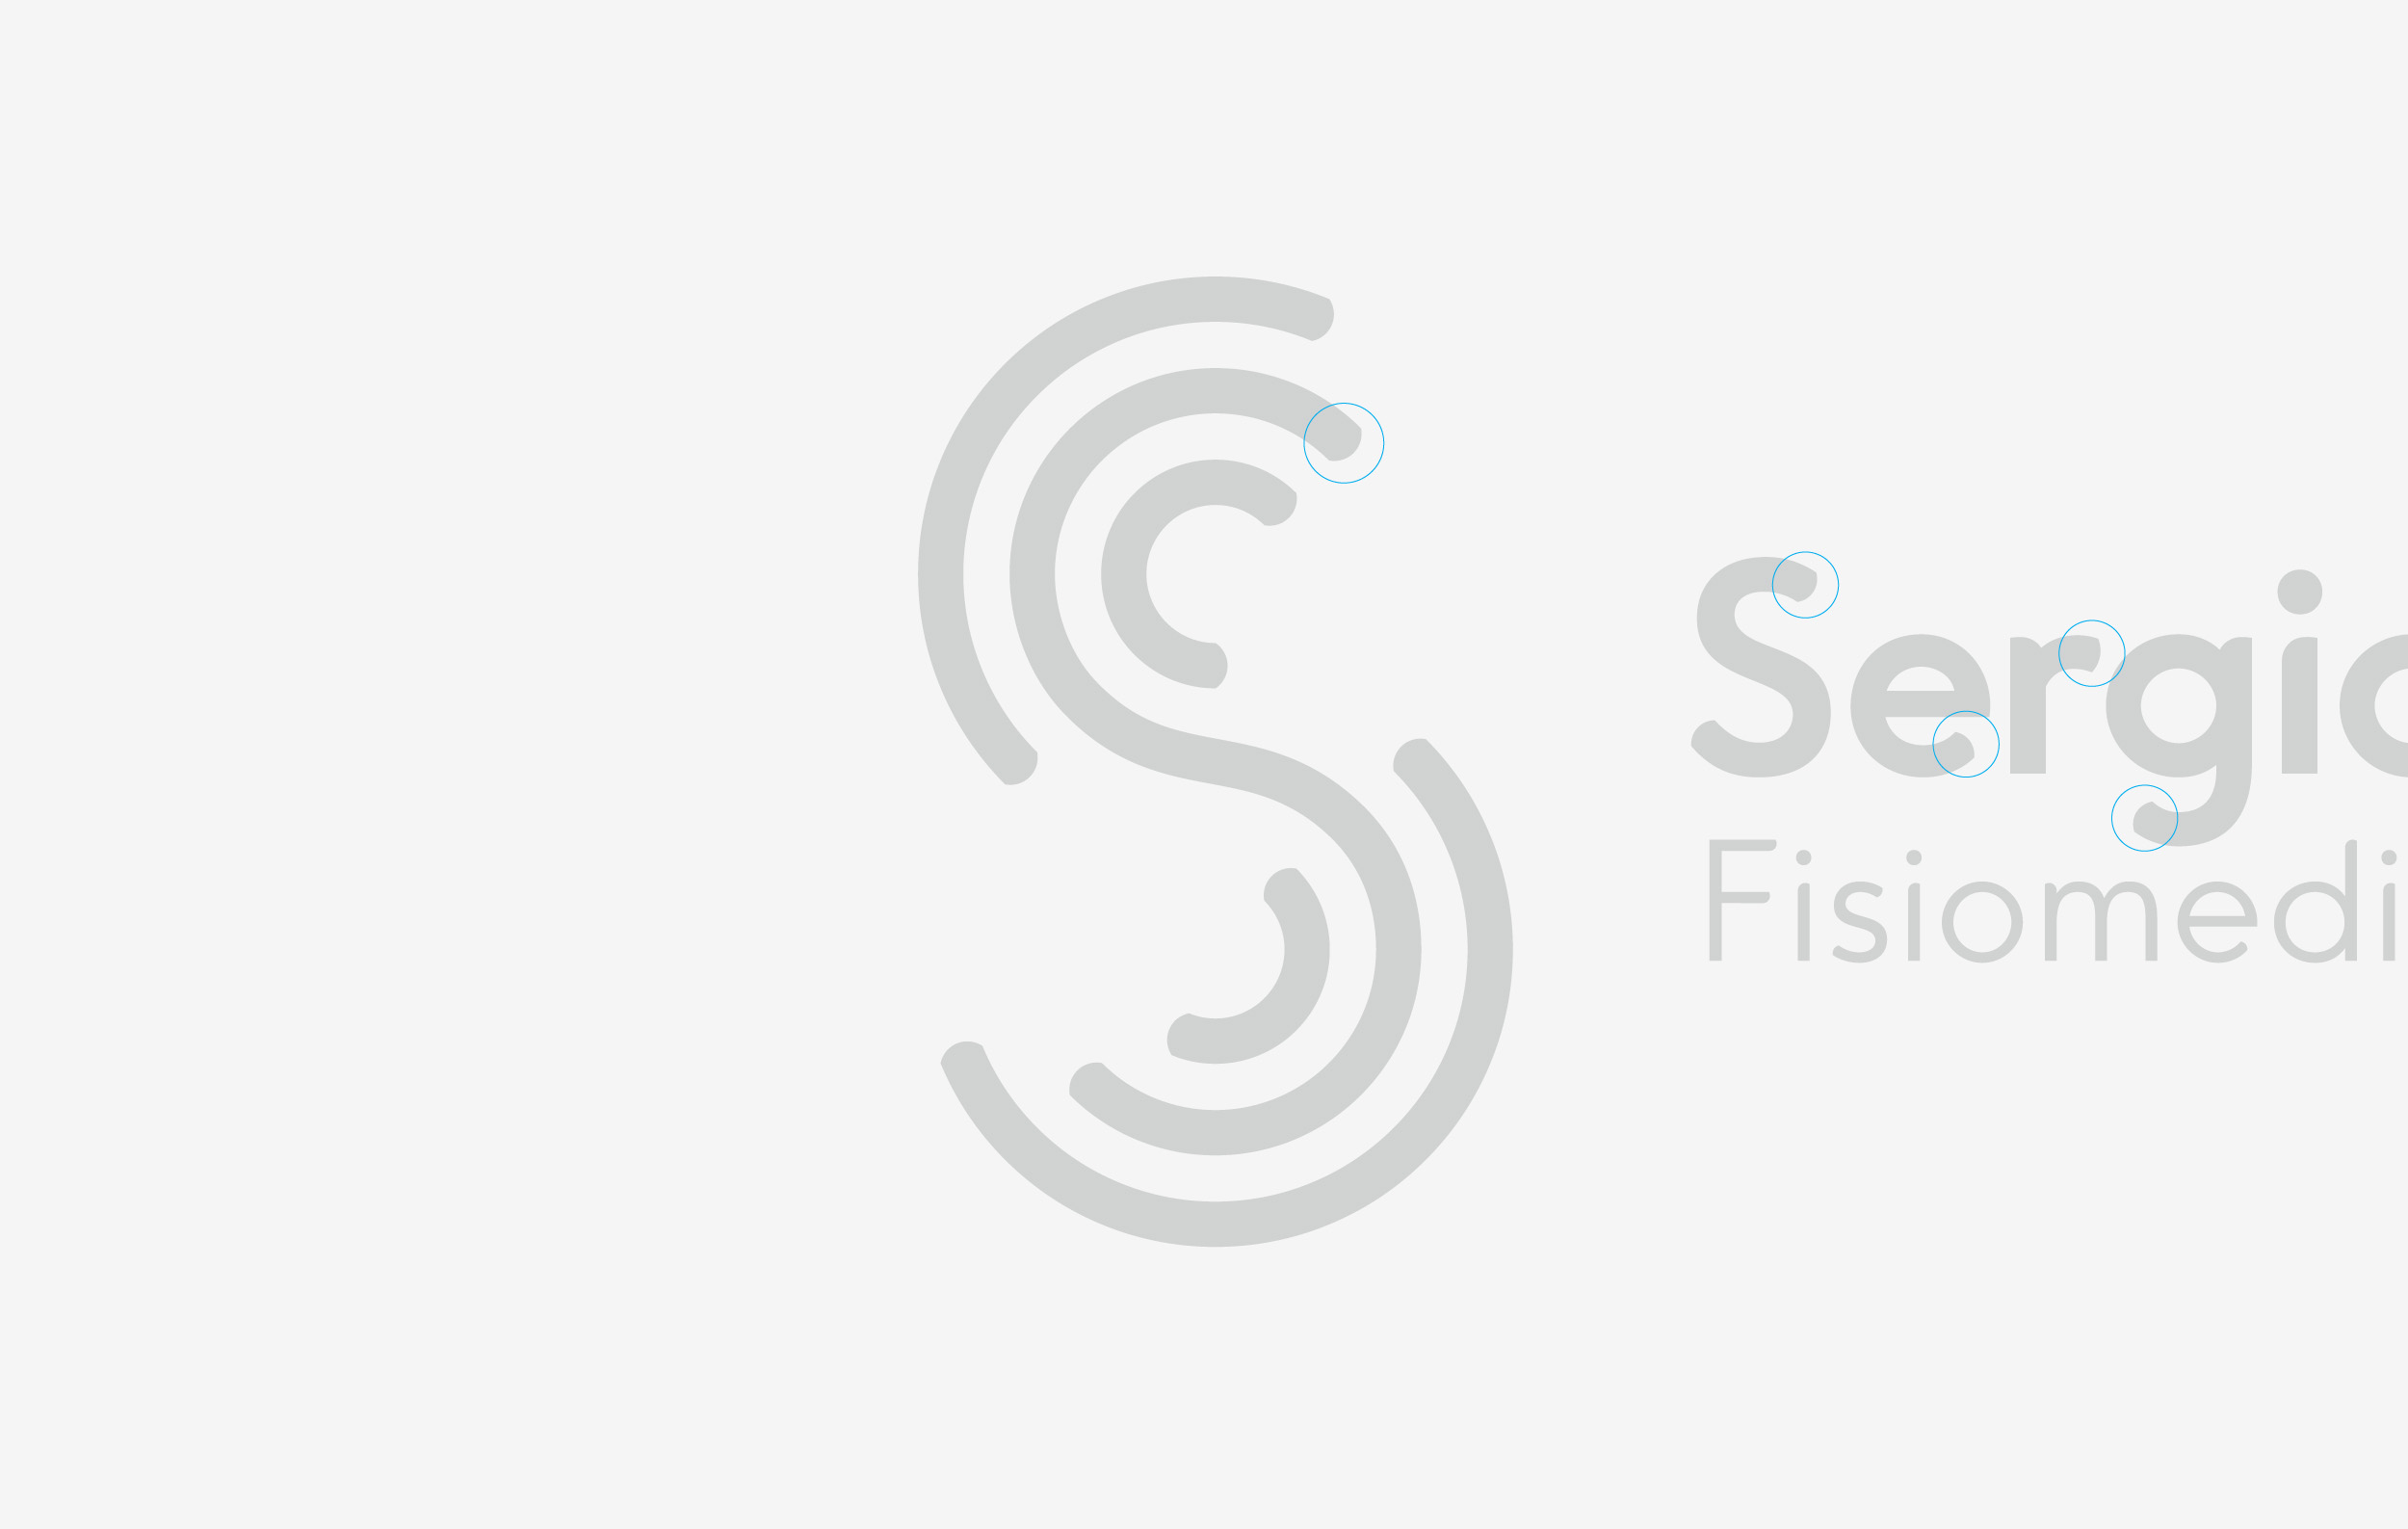 SS_Logo_Detalle